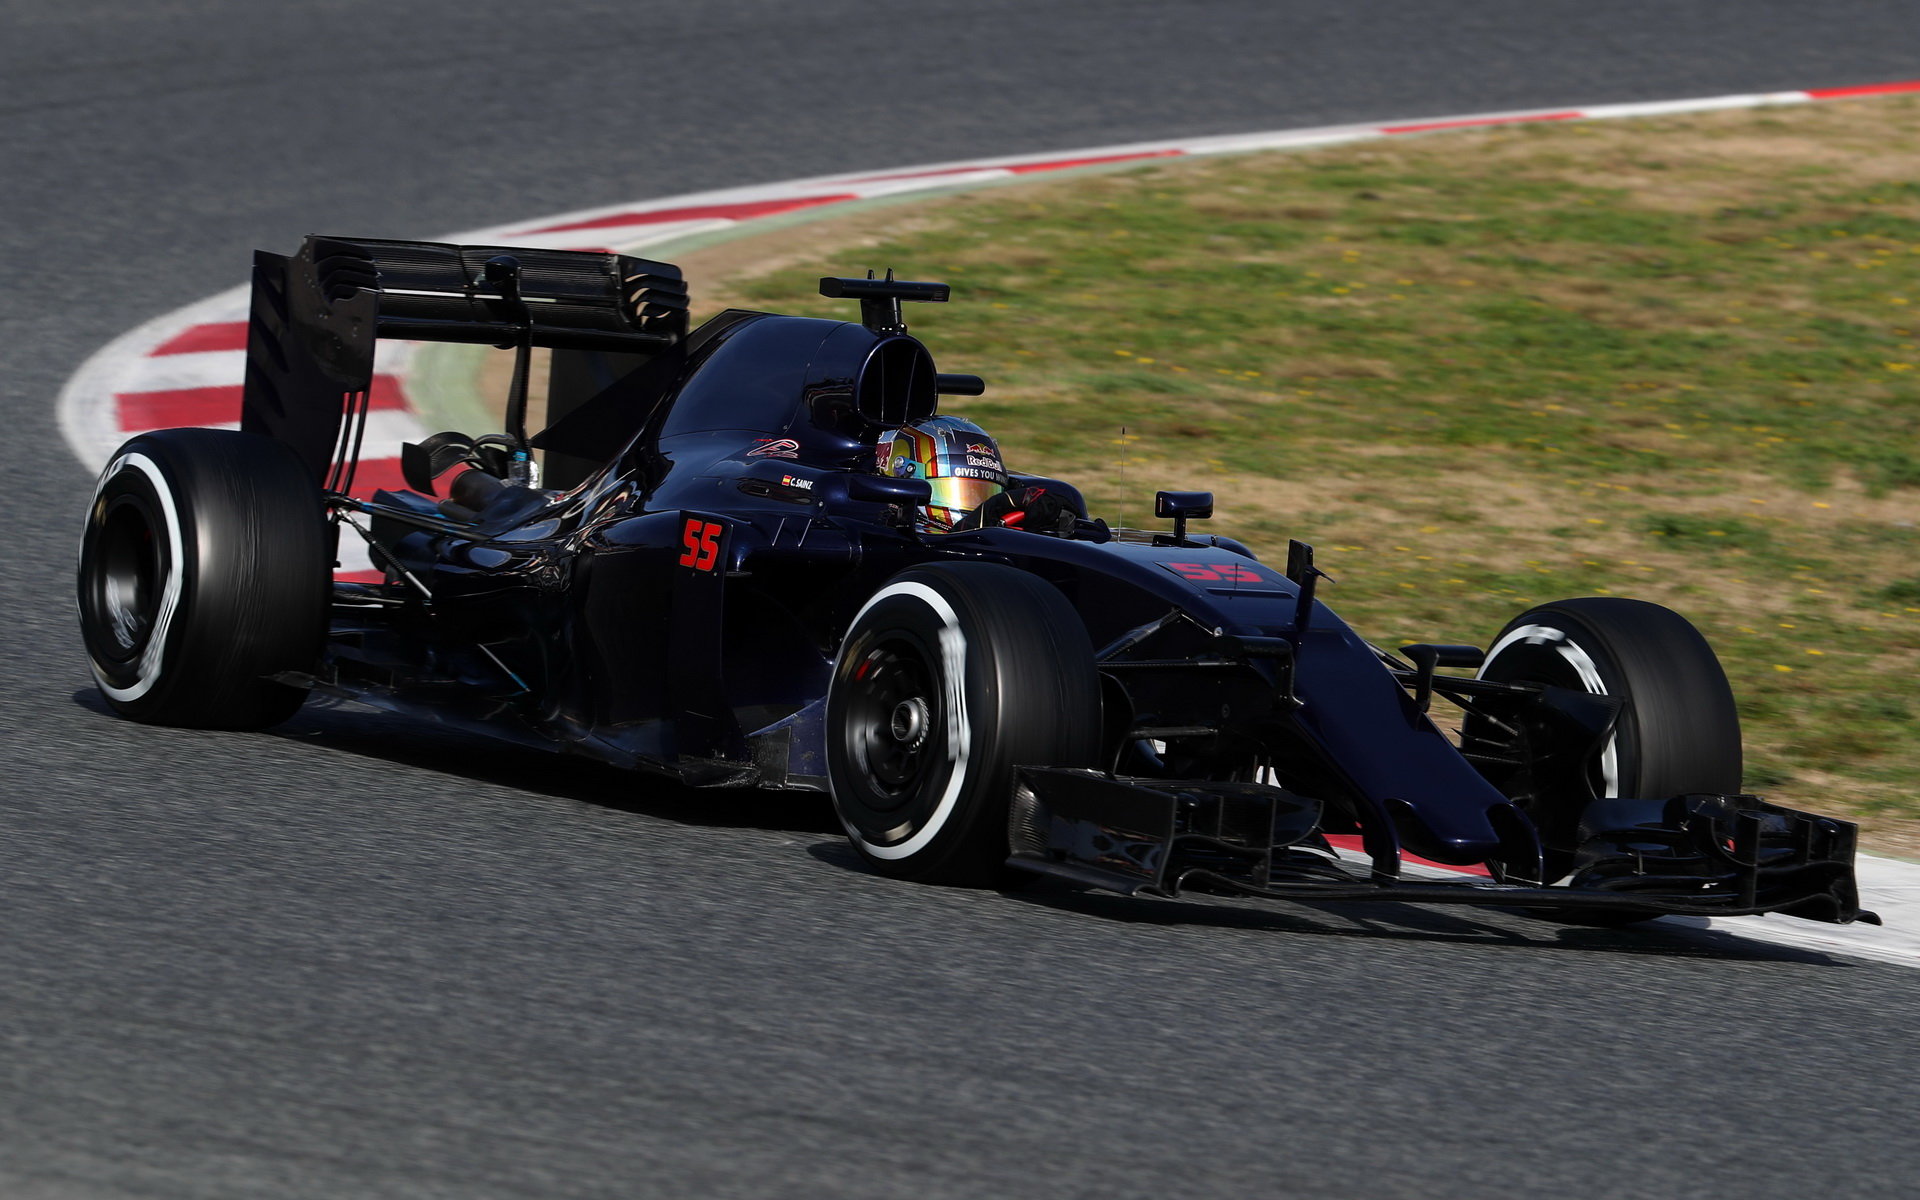 Carlos Sainz s novým vozem Toro Rosso STR11 - Ferrari